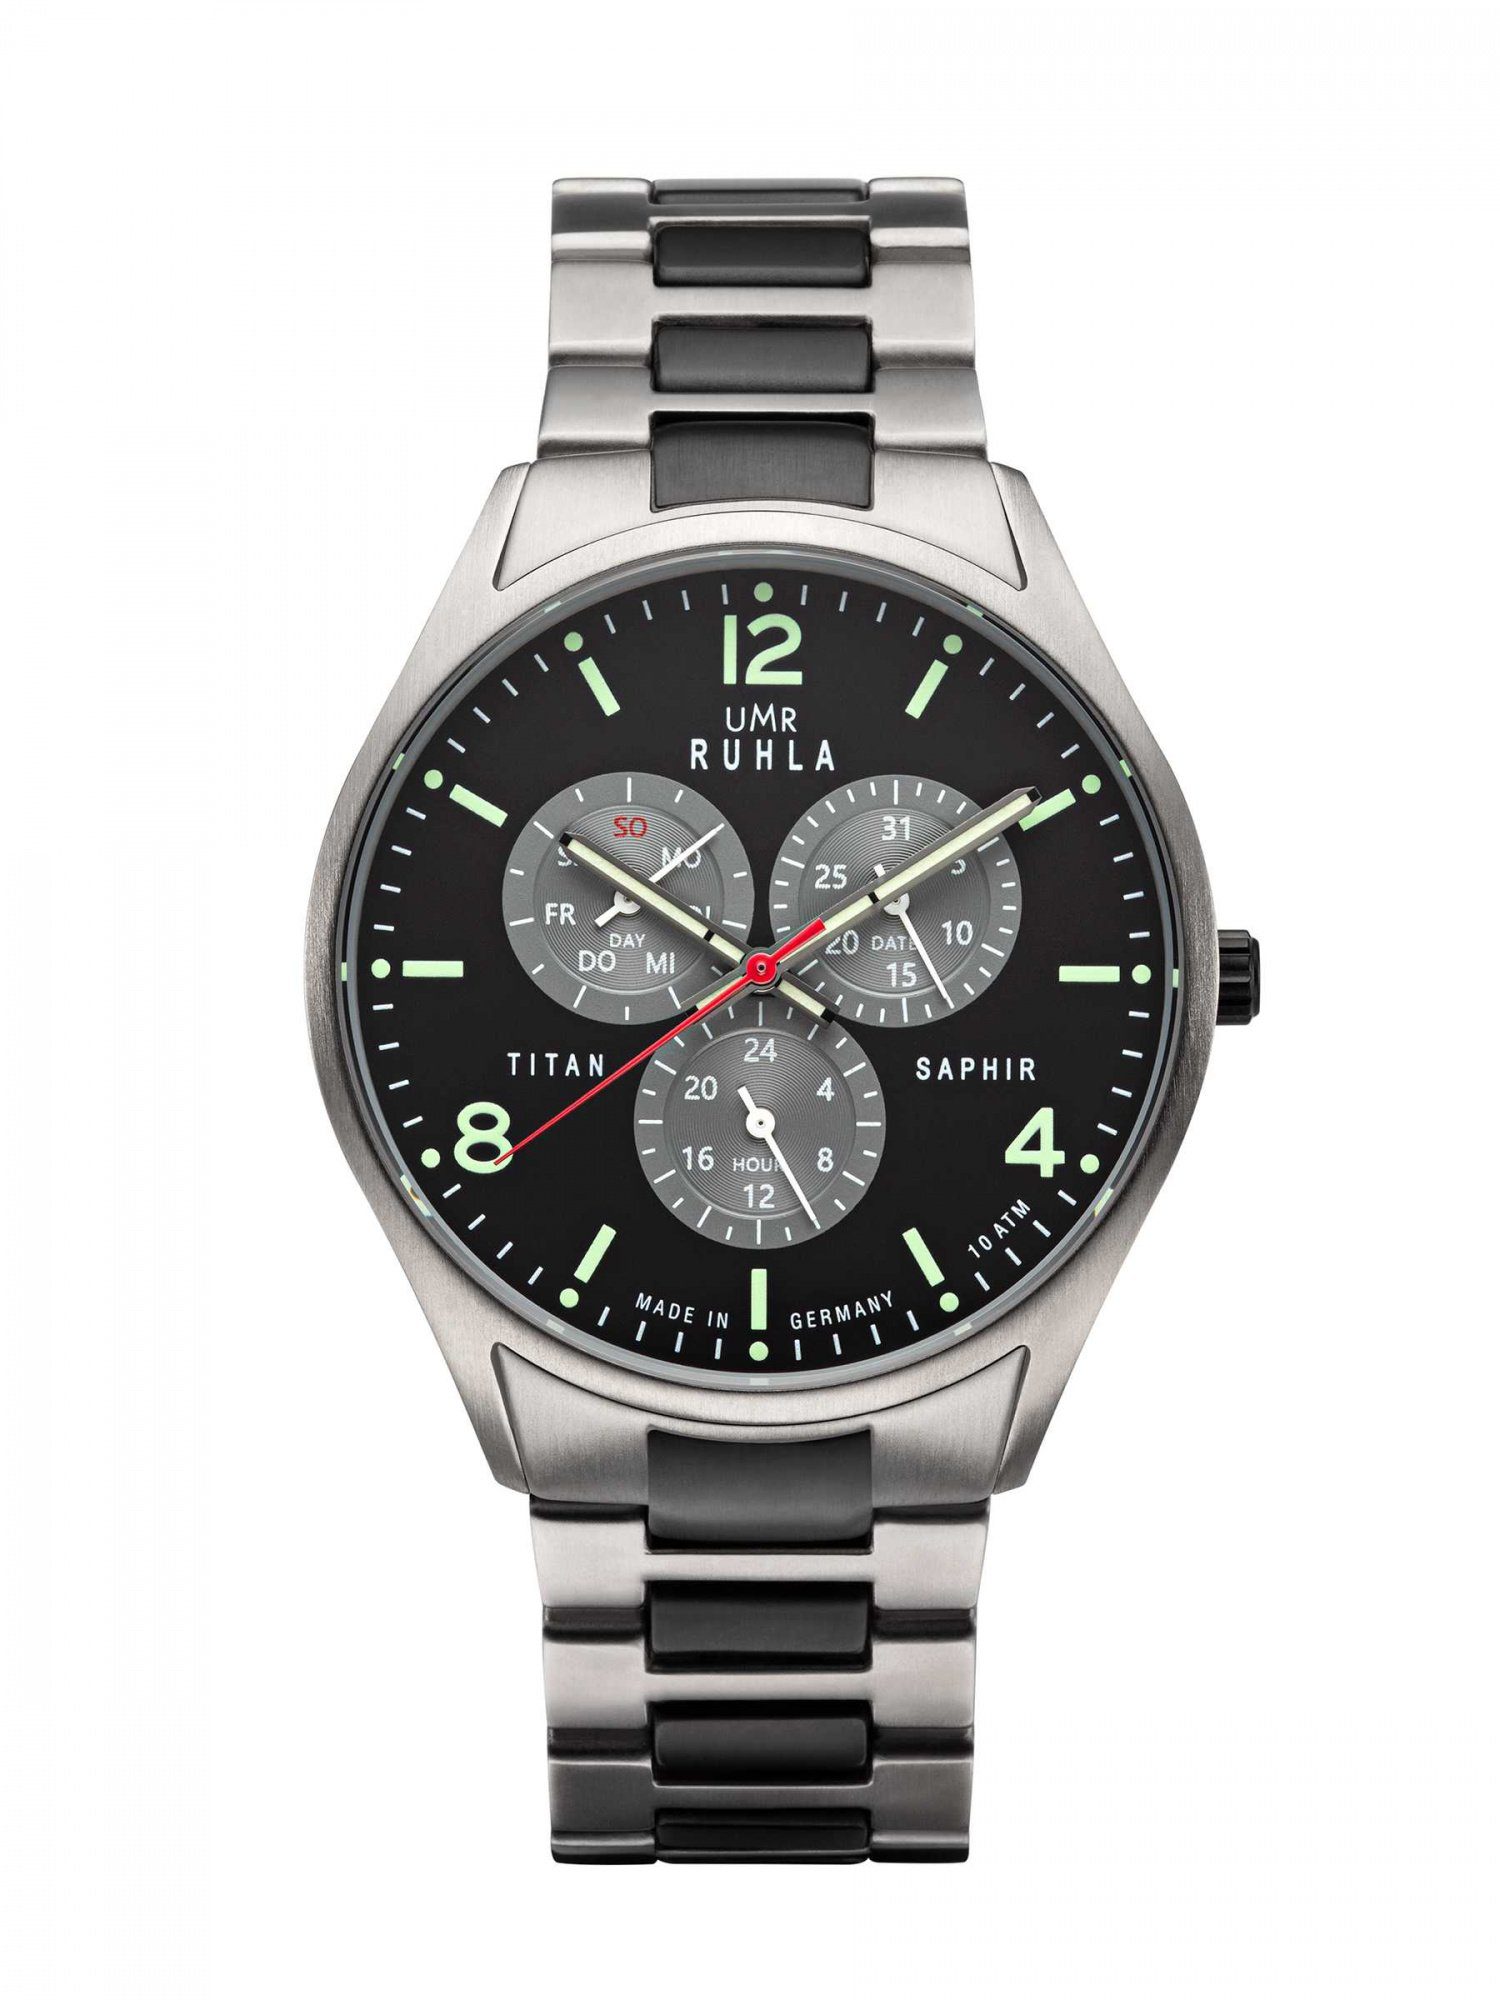 UMR Ruhla Quarzuhr Classic Titan Herrenuhr schwarz 30497 Titanband 42 mm,  Made in Germany, Sportliche Uhr für Herren mit hochwertigem Quarz-Uhrwerk  TMI VH68